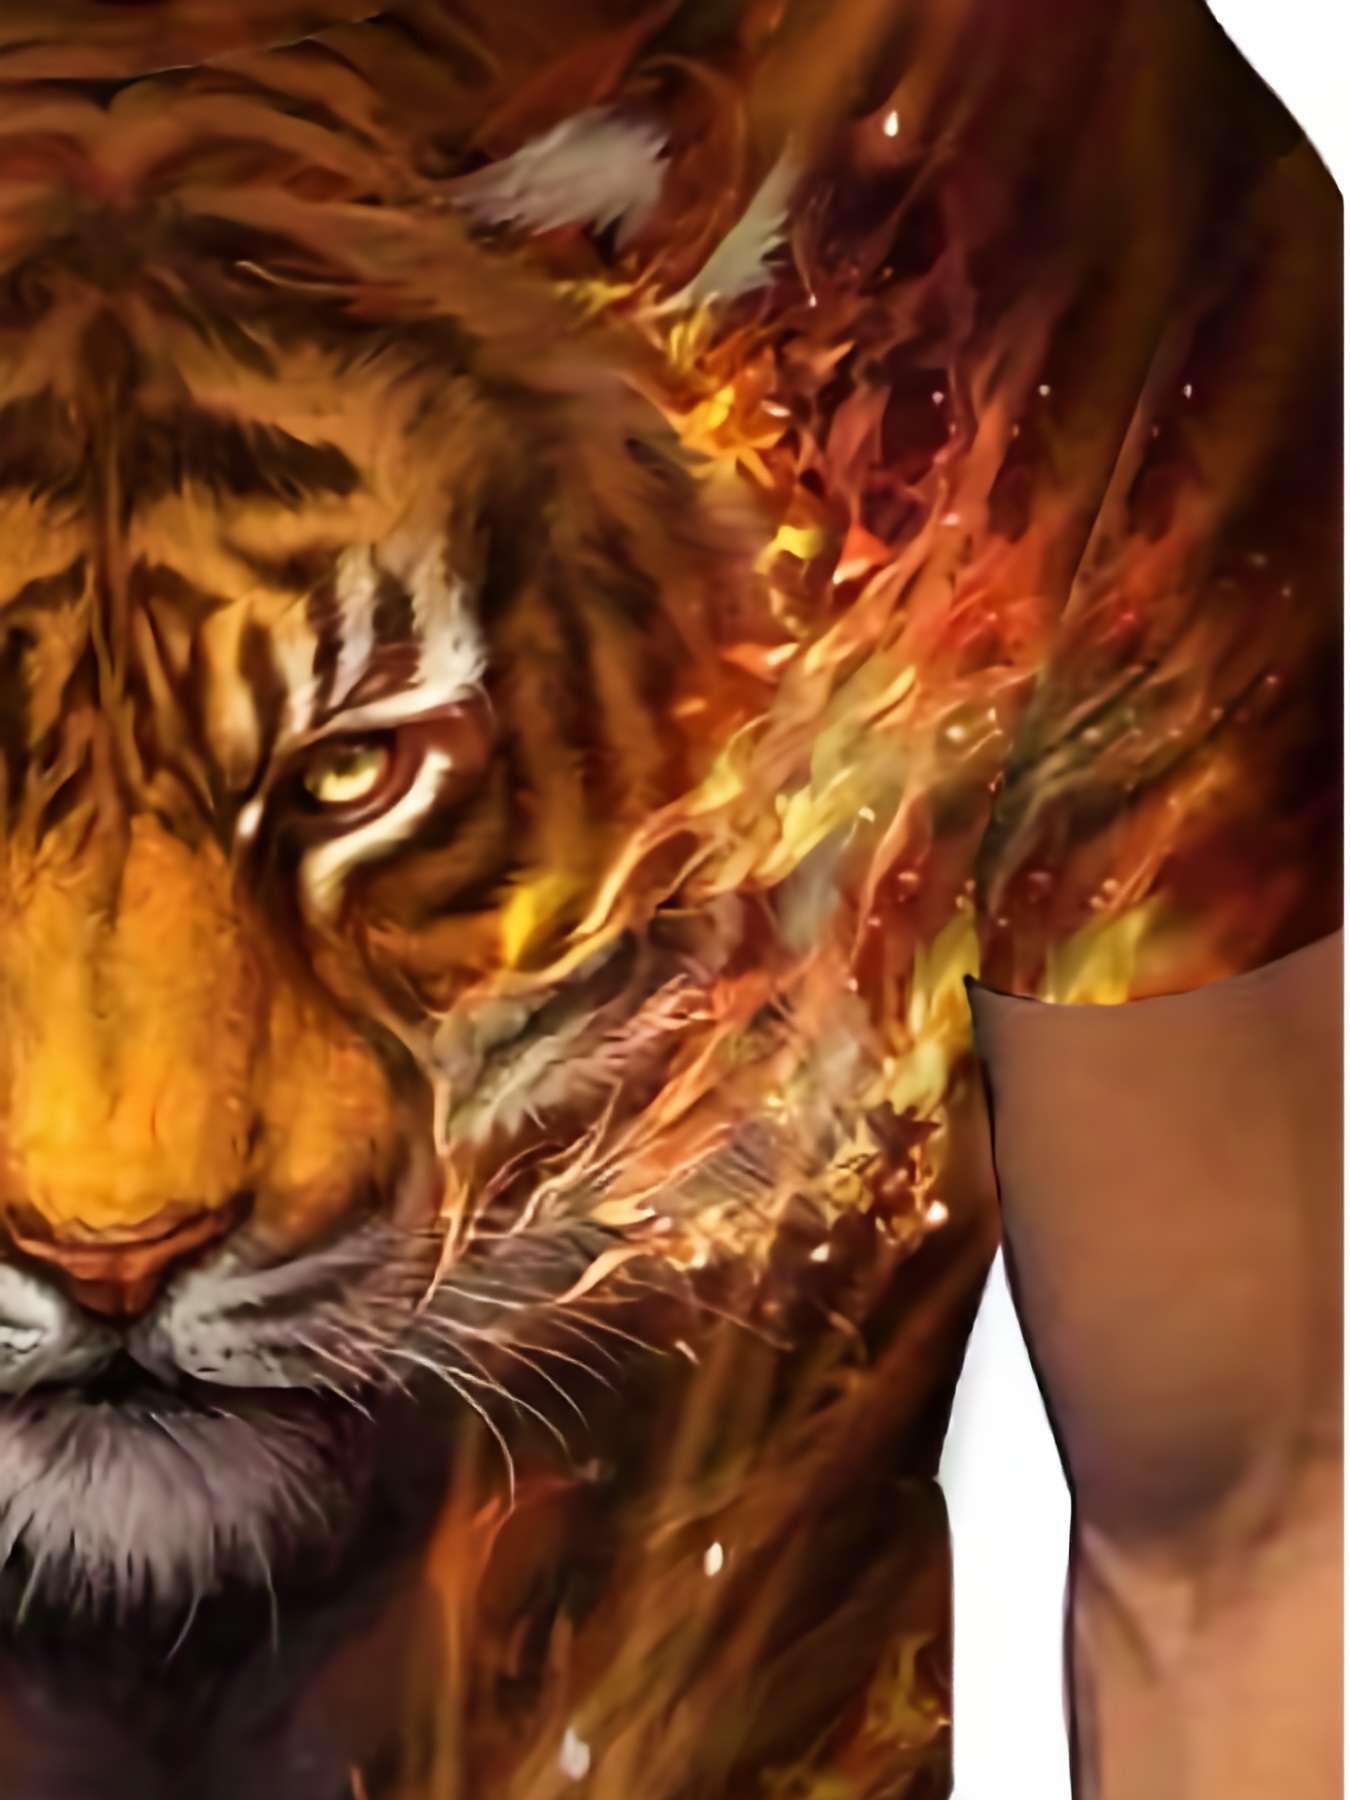 Tiger T Shirt Mens | Tiger-Universe